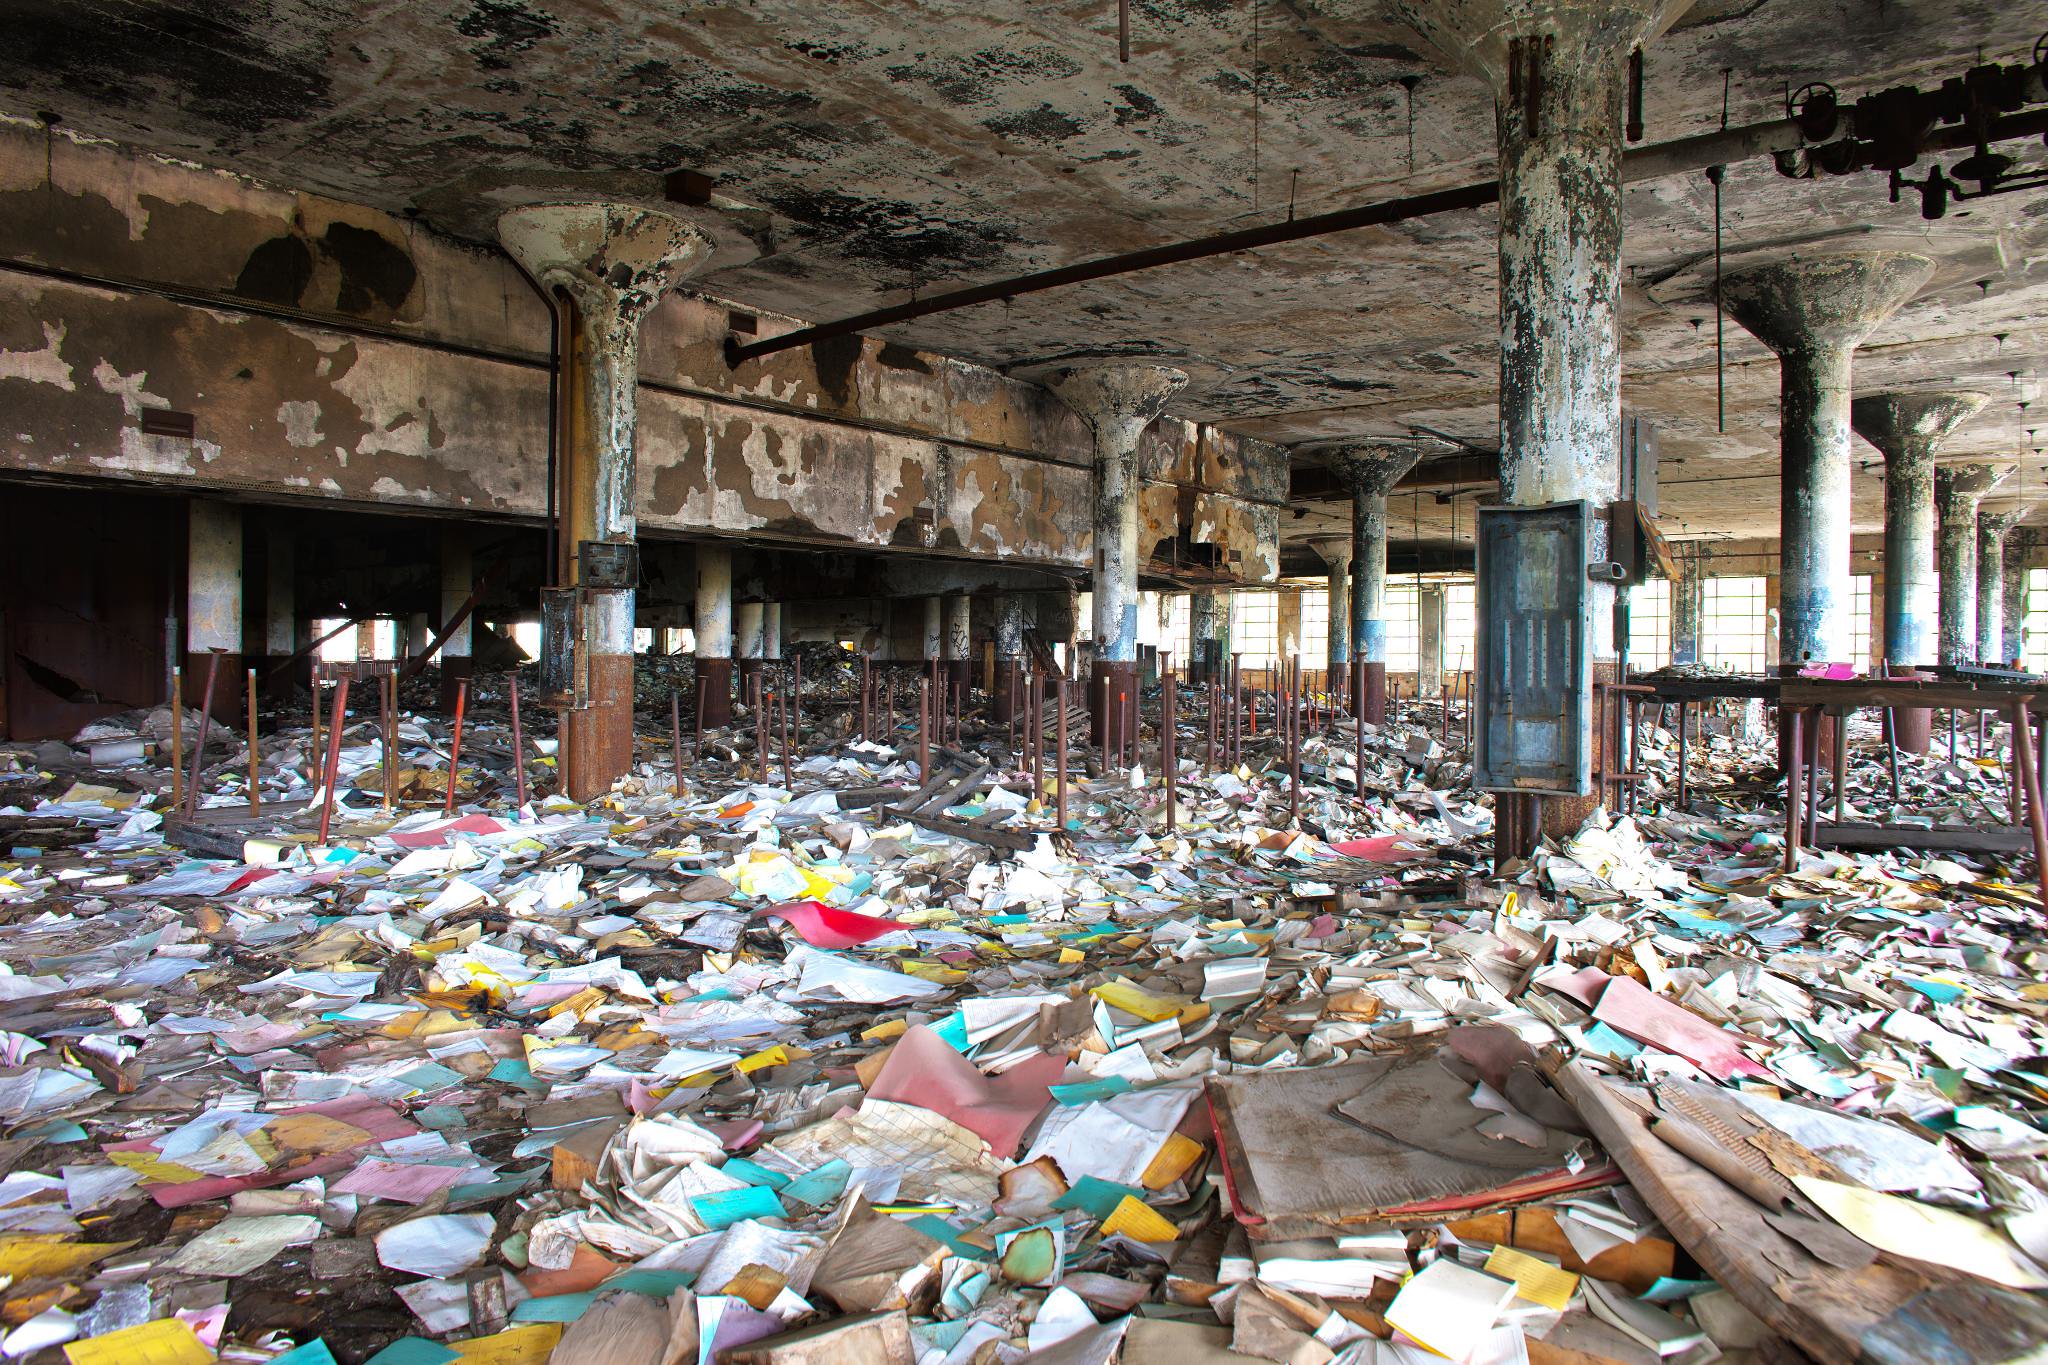 Abandoned warehouse